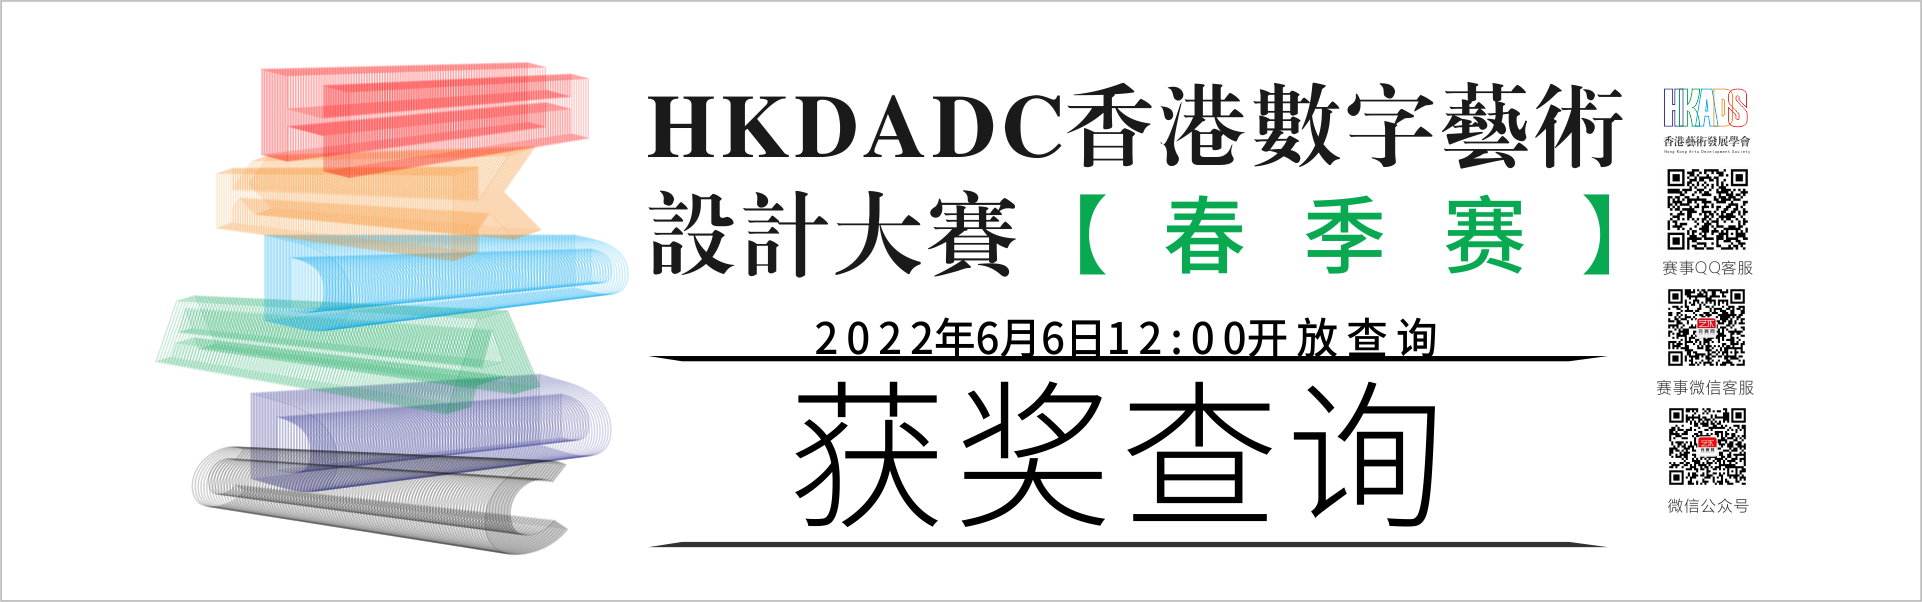 HKDADC--获奖查询.png